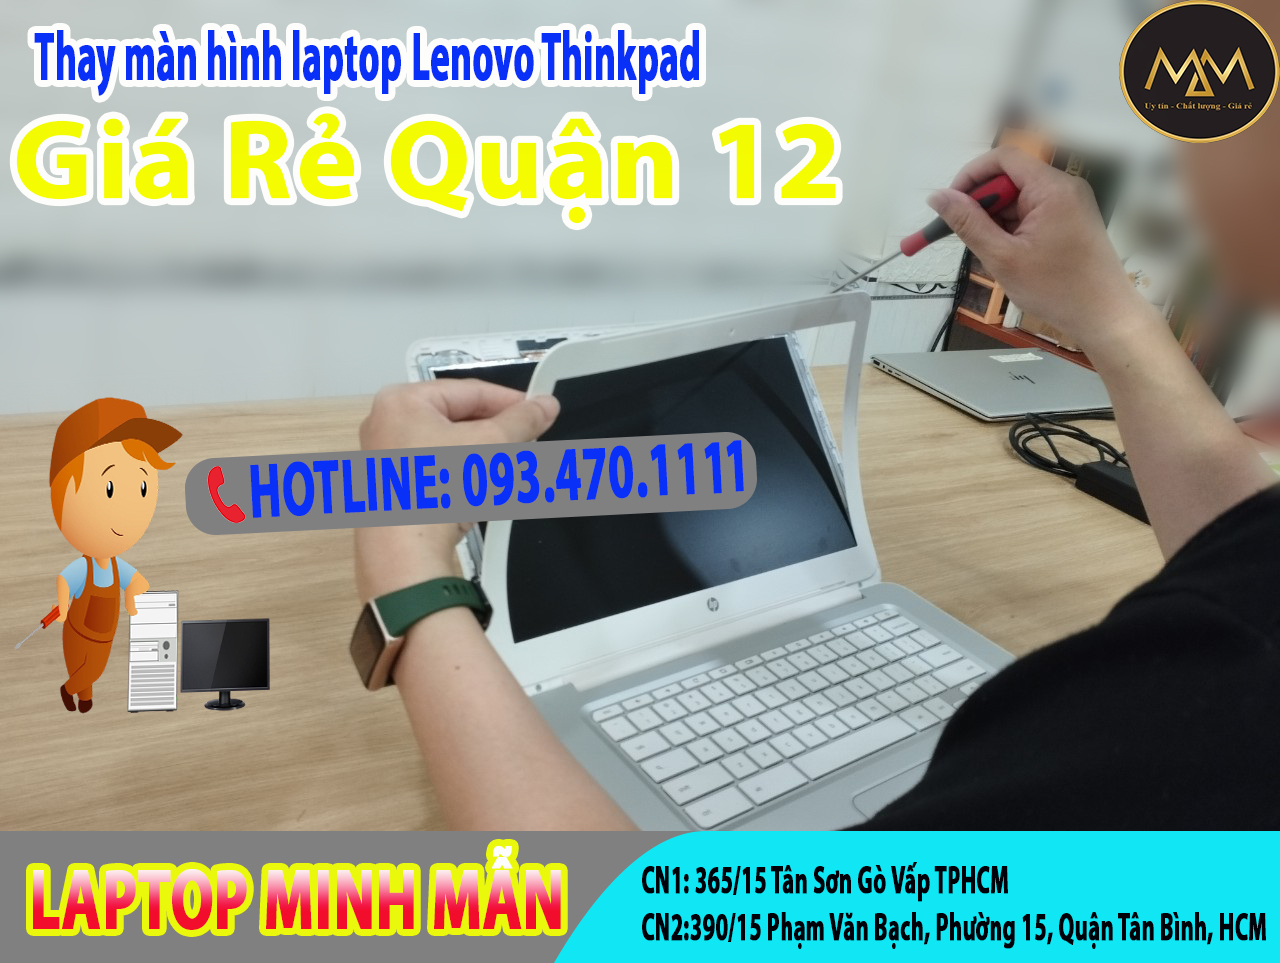 Thay-màn-hình-laptop-Lenovo-Thinkpad-giá-rẻ-quận-12